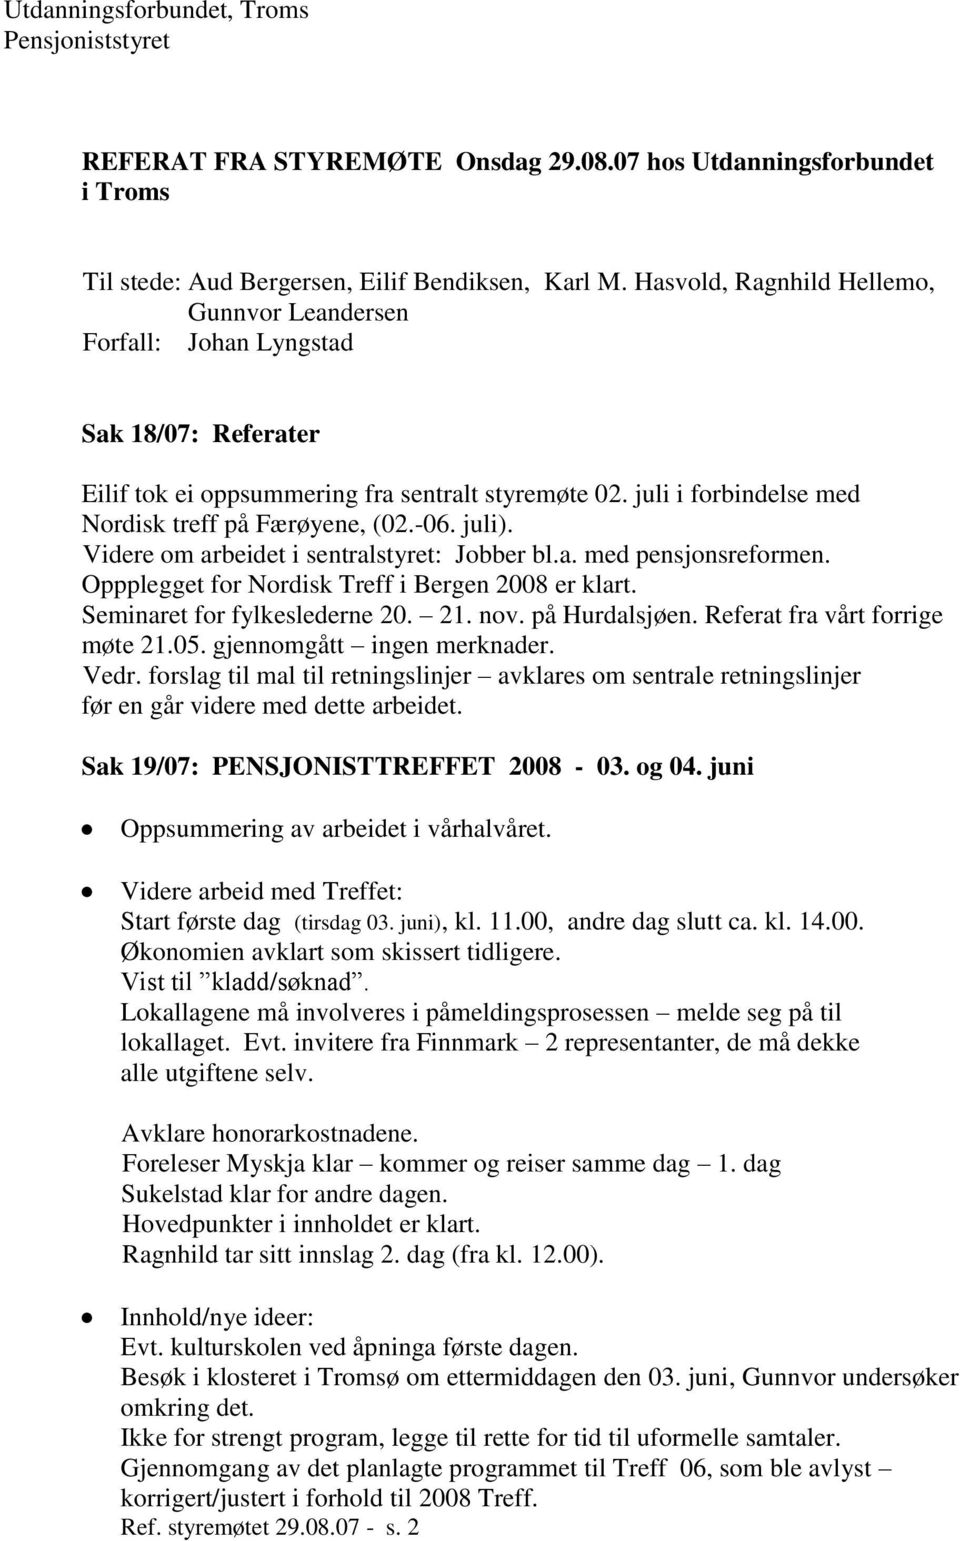 styremøte 02. juli i forbindelse med Nordisk treff på Færøyene, (02.-06. juli). Videre om arbeidet i sentralstyret: Jobber bl.a. med pensjonsreformen.